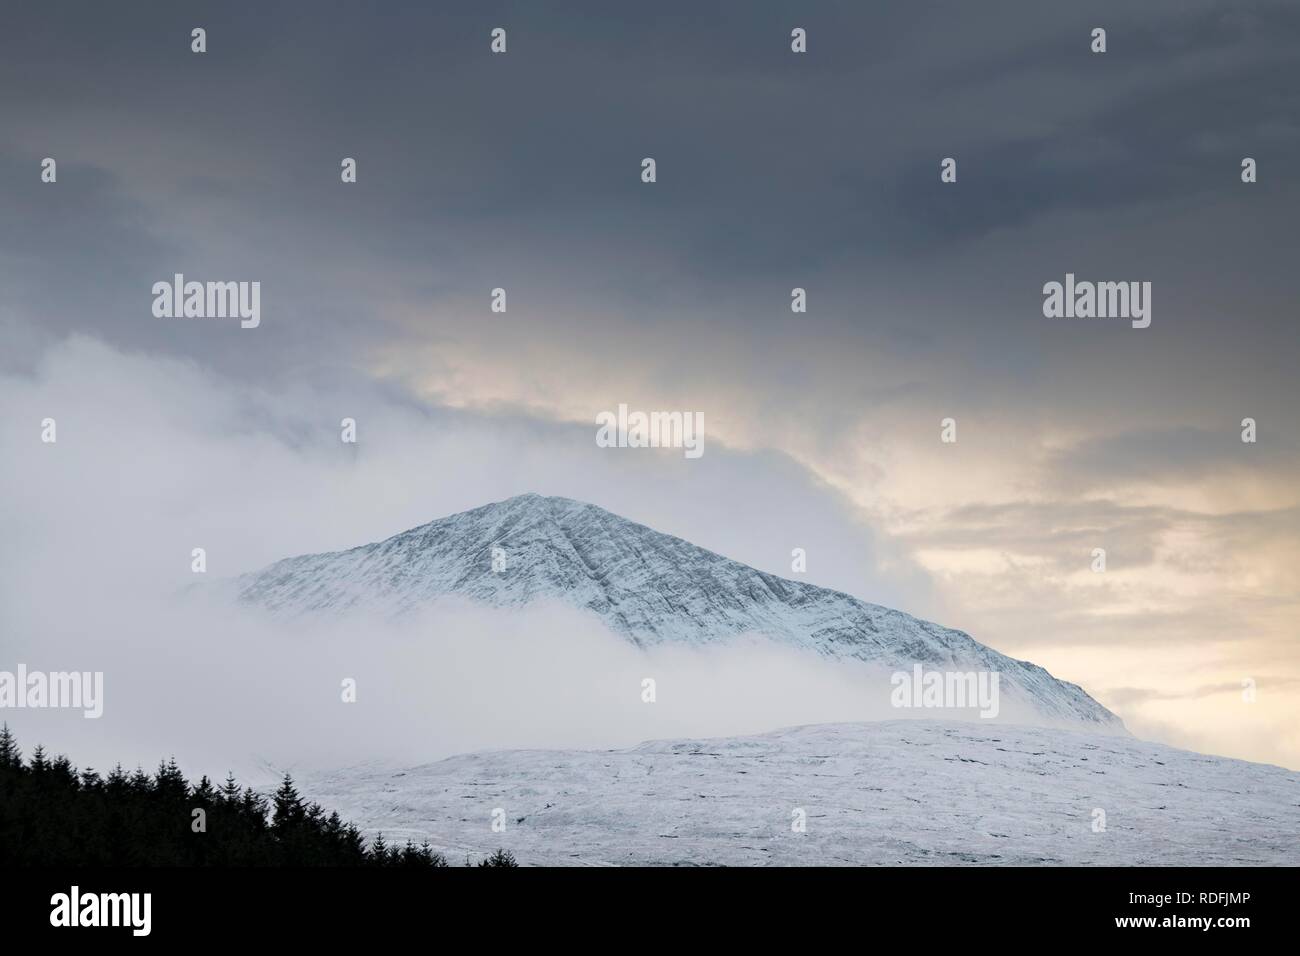 Die schneebedeckten Berggipfel mit Wolken in der schneebedeckten Landschaft, Sligachan, Portree, Isle of Sky, Schottland, Vereinigtes Königreich Stockfoto